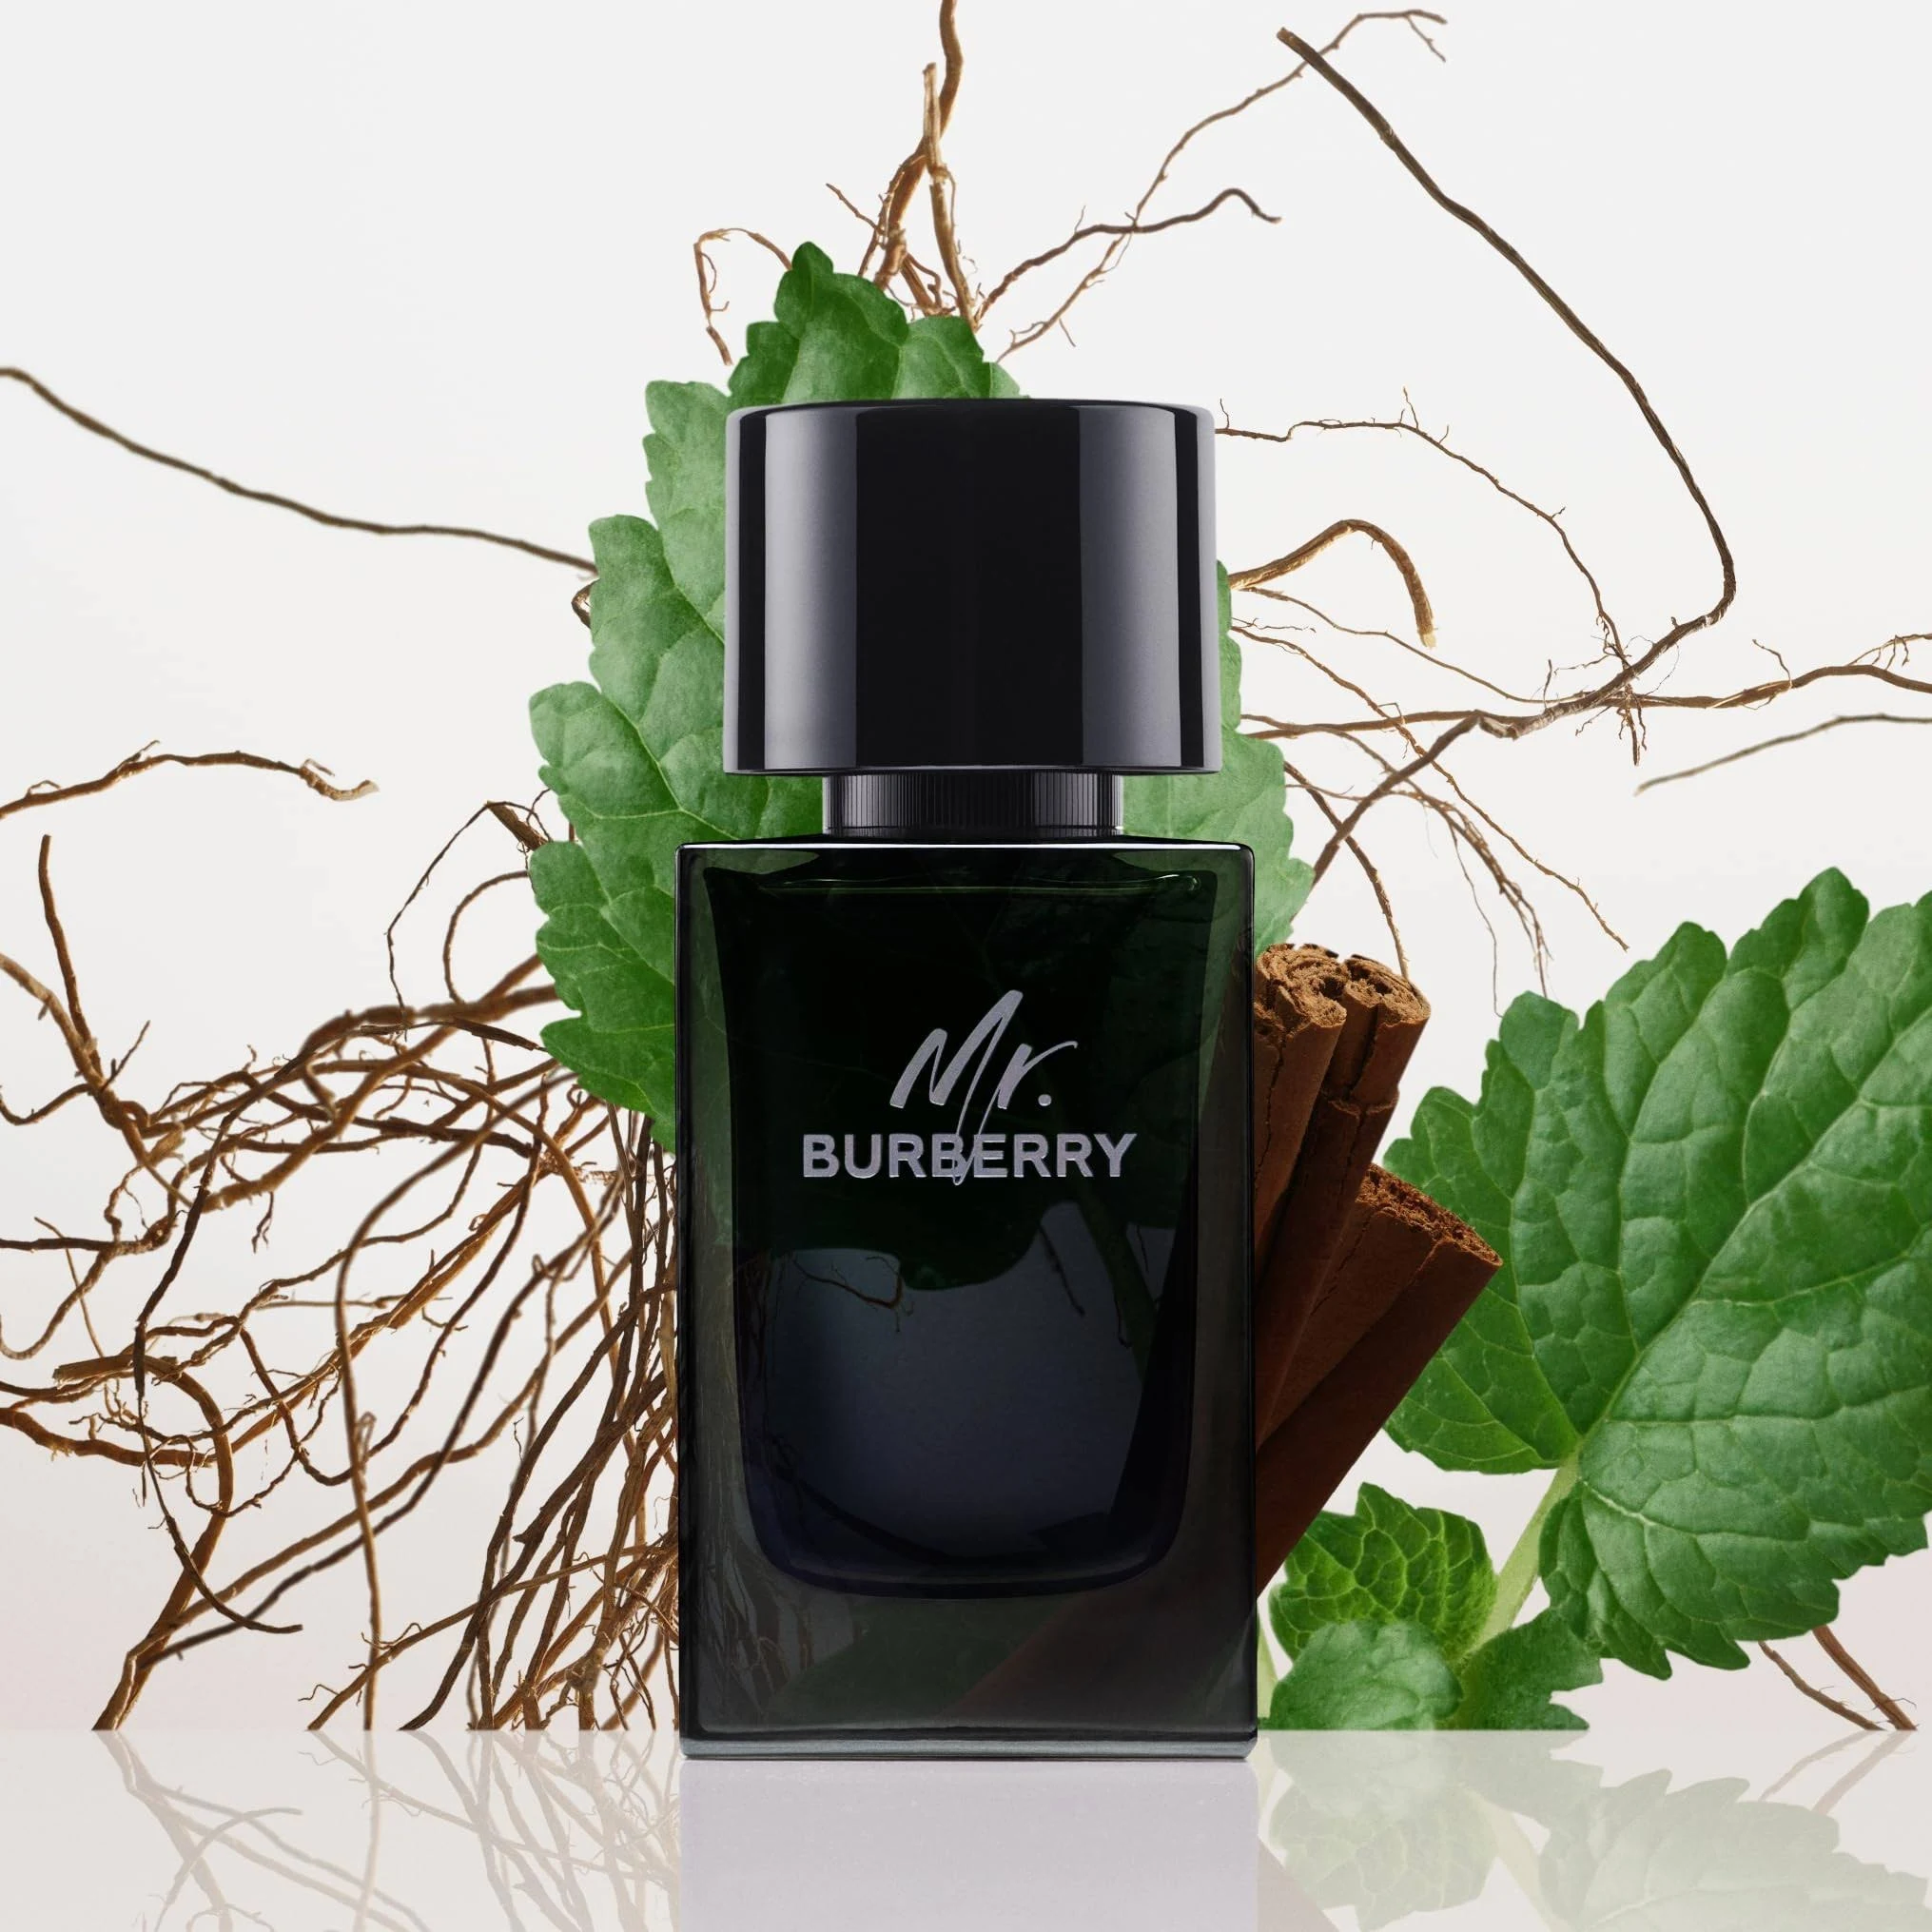 Burberry Mr. Burberry Eau de Parfum Spray 50 ml for Men